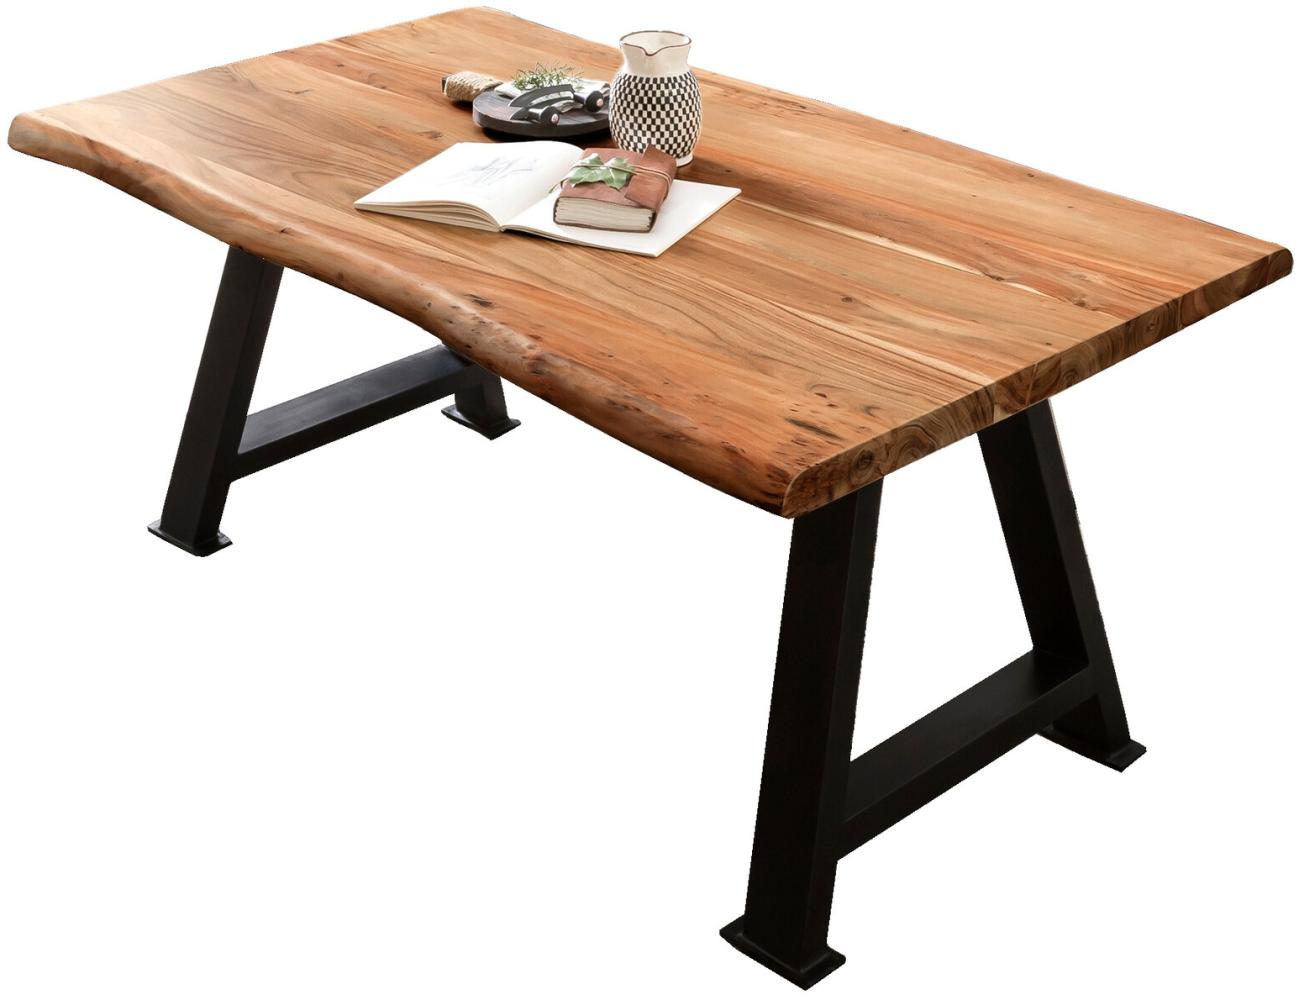 Sit Möbel Tables & Co Tisch 240x100 cm L = 240 x B = 100 x H = 79 cm Platte natur, Gestell antikschwarz Bild 1